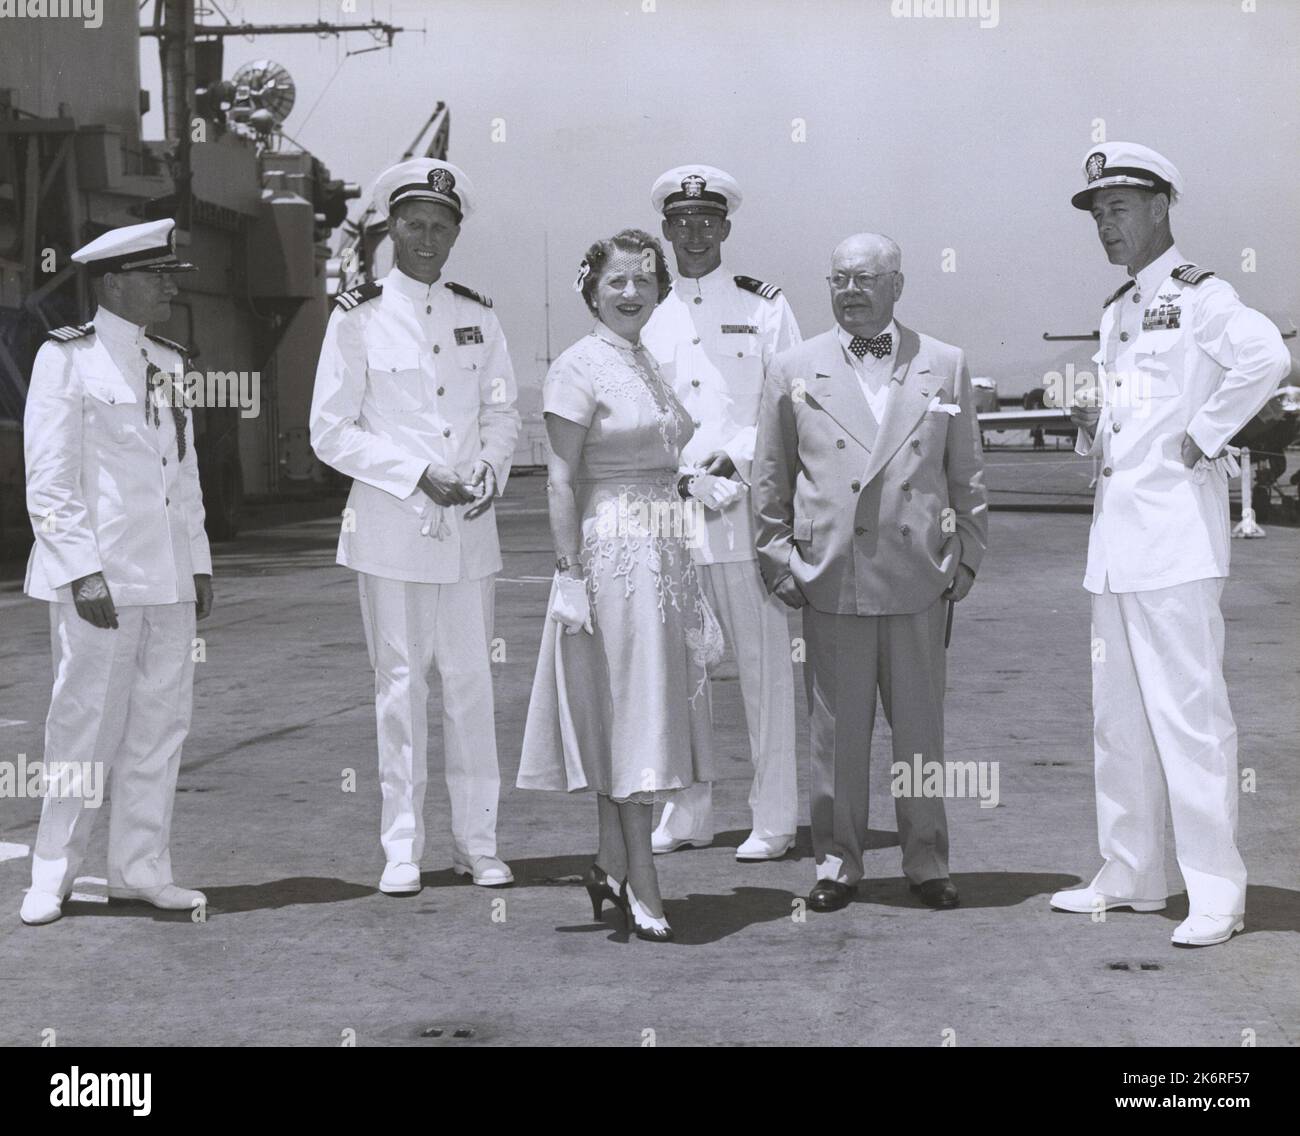 Ambasciatore americano in Brasile, James Scott Kemper, a bordo della USS Roosevelt (CVA-42) durante la visita delle navi a Rio de Janeiro, BrazilPictured: (L-R) Capitano T.F. Cullen, Lt. L. Dobbs, Sig.ra J.S. Kemper, moglie di AMB, LCDR. McCauley, l'ambasciatore Kemper e il capitano J.S. Thach, CO della nave. Foto Stock